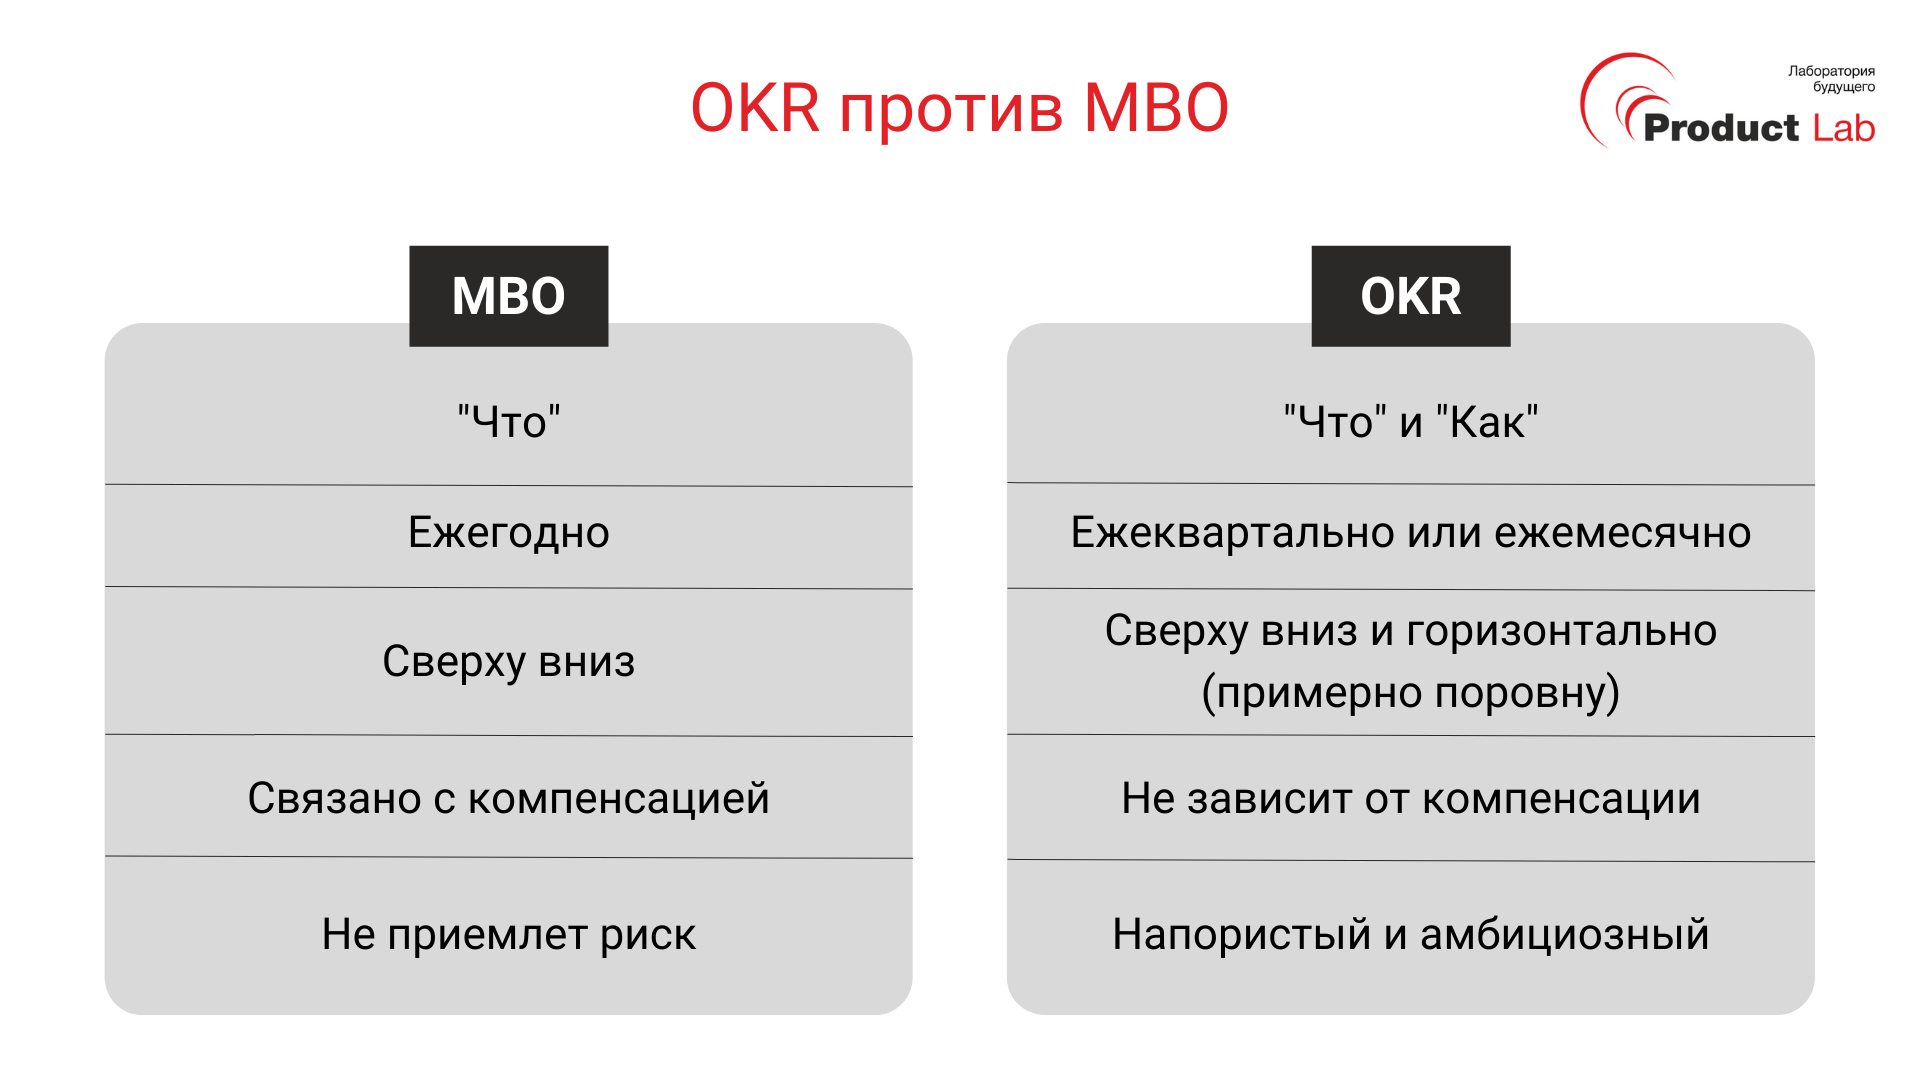 OKR MBO отличия